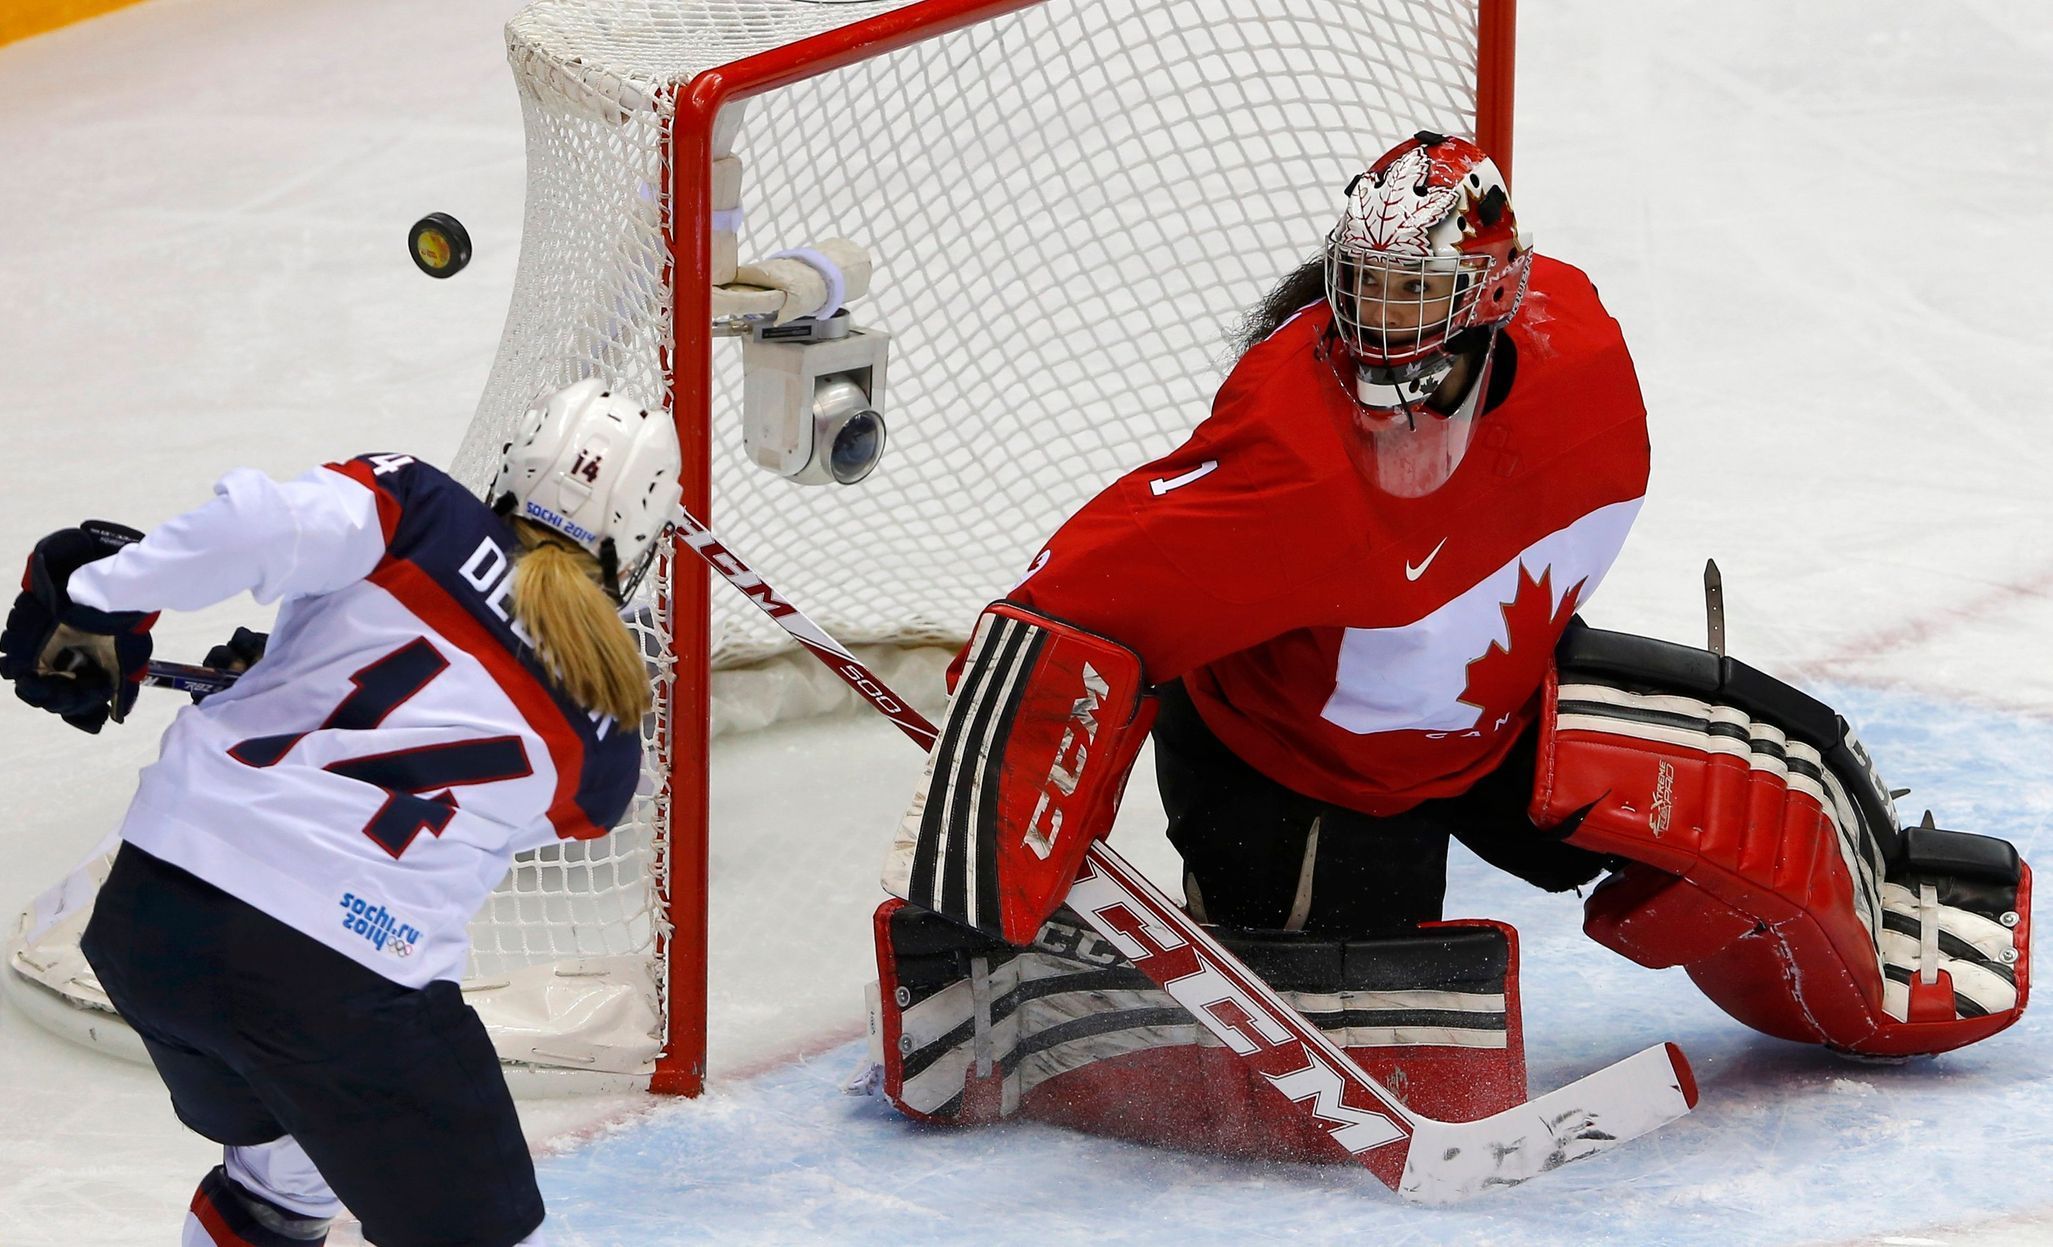 Soči 2014: Kanada - USA, Deckerová, Szambadosová (hokej, ženy, finále)